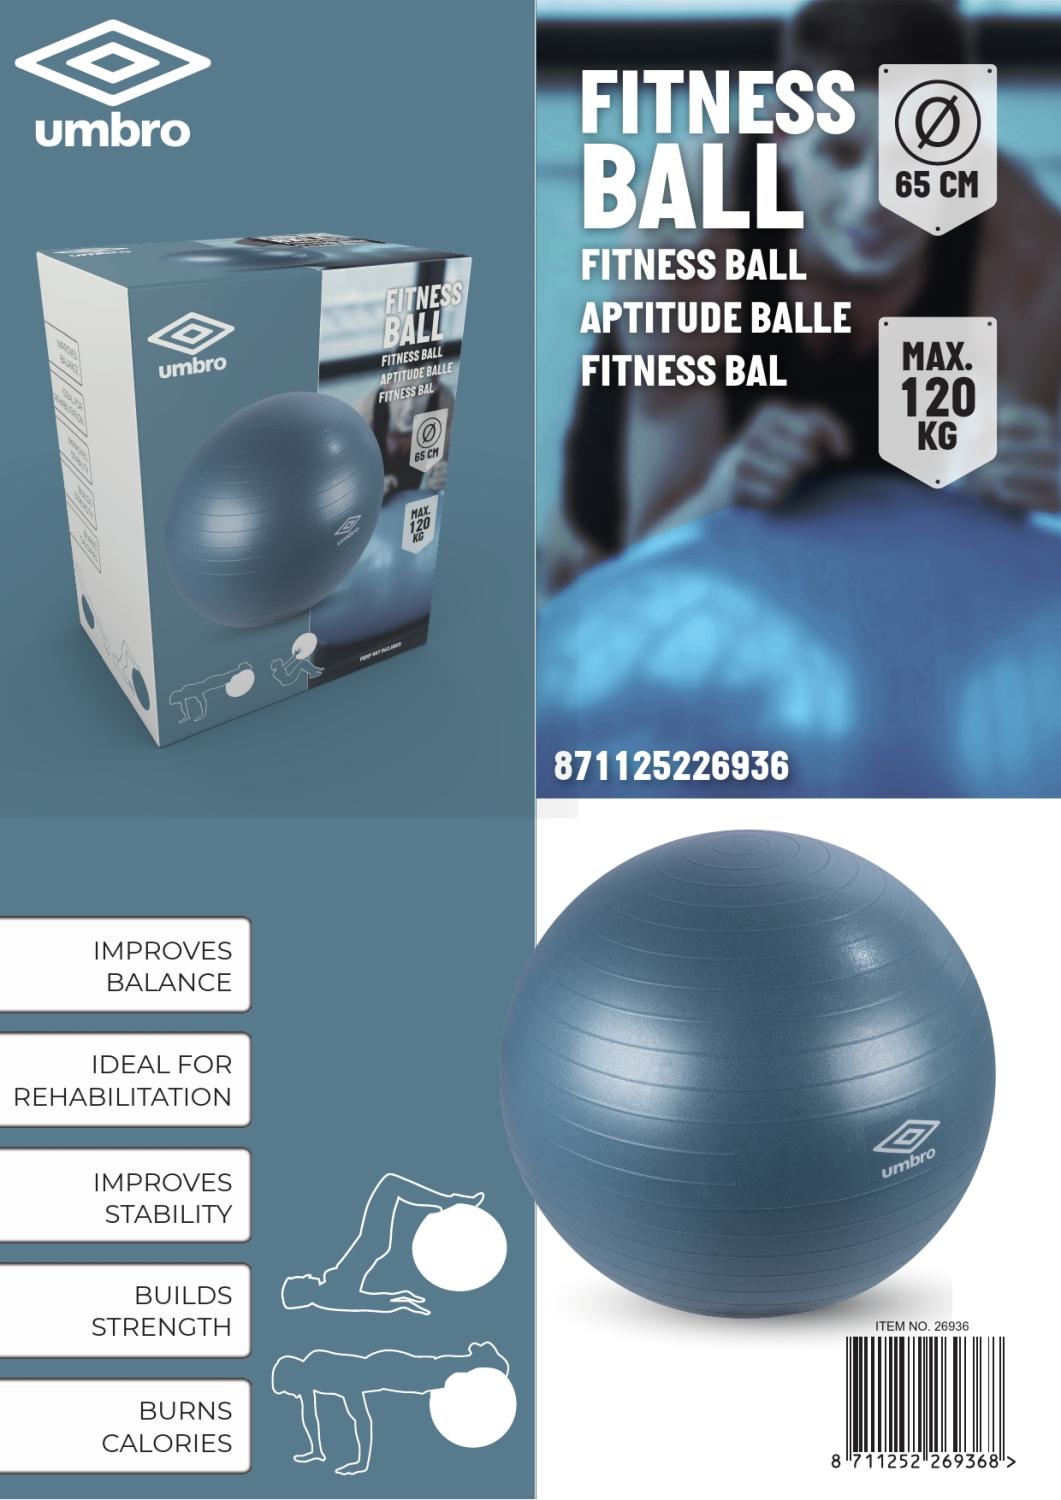 Umbro Blauwe Fitness Gymbal 65cm - ED-26936 - Bivakshop